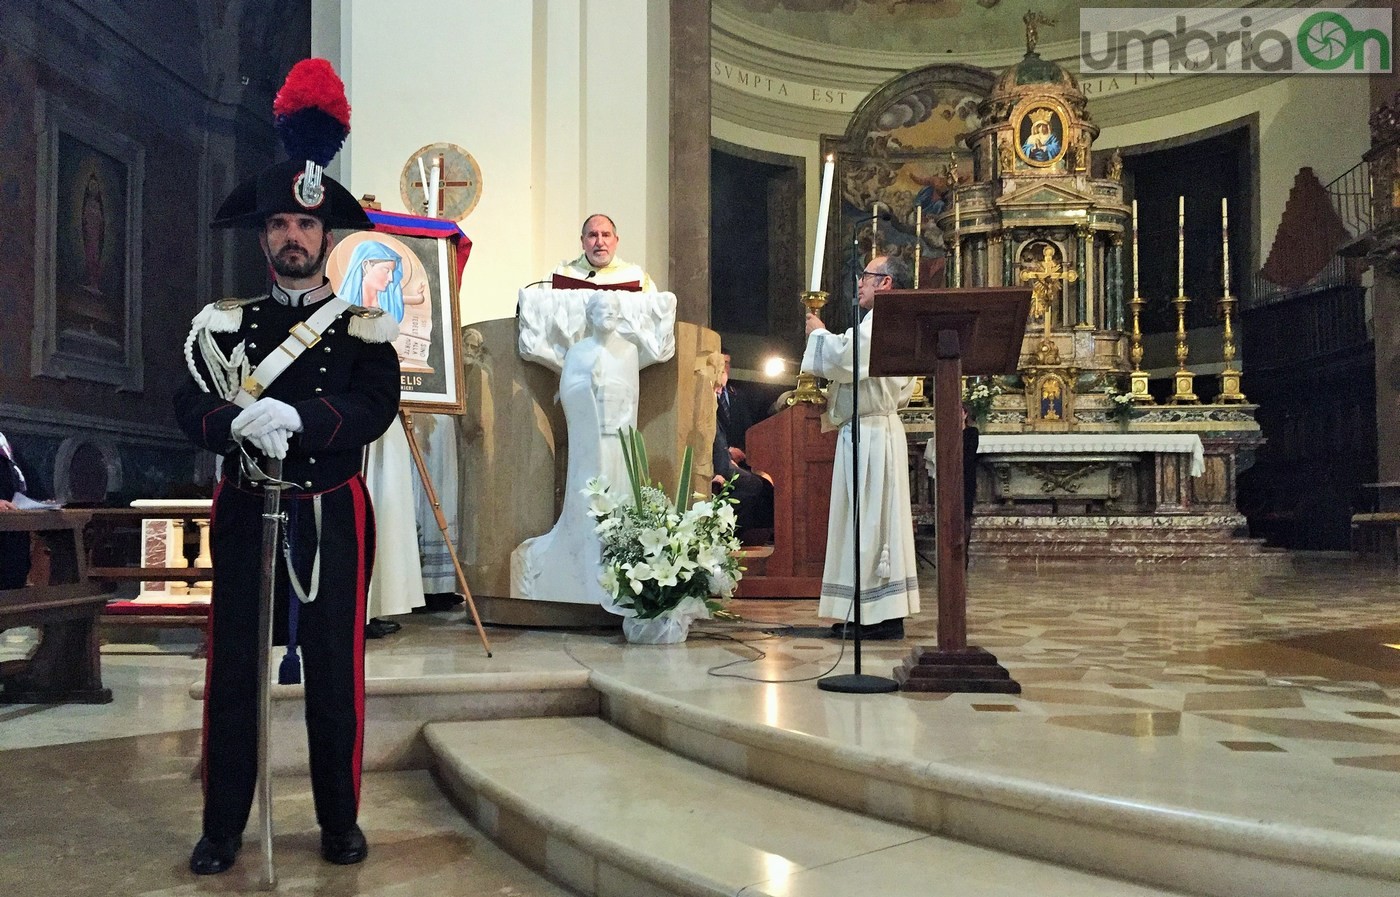 Virgo-Fidelis-carabinieri-Terni-in-cattedrale-21-novembre-2016-11